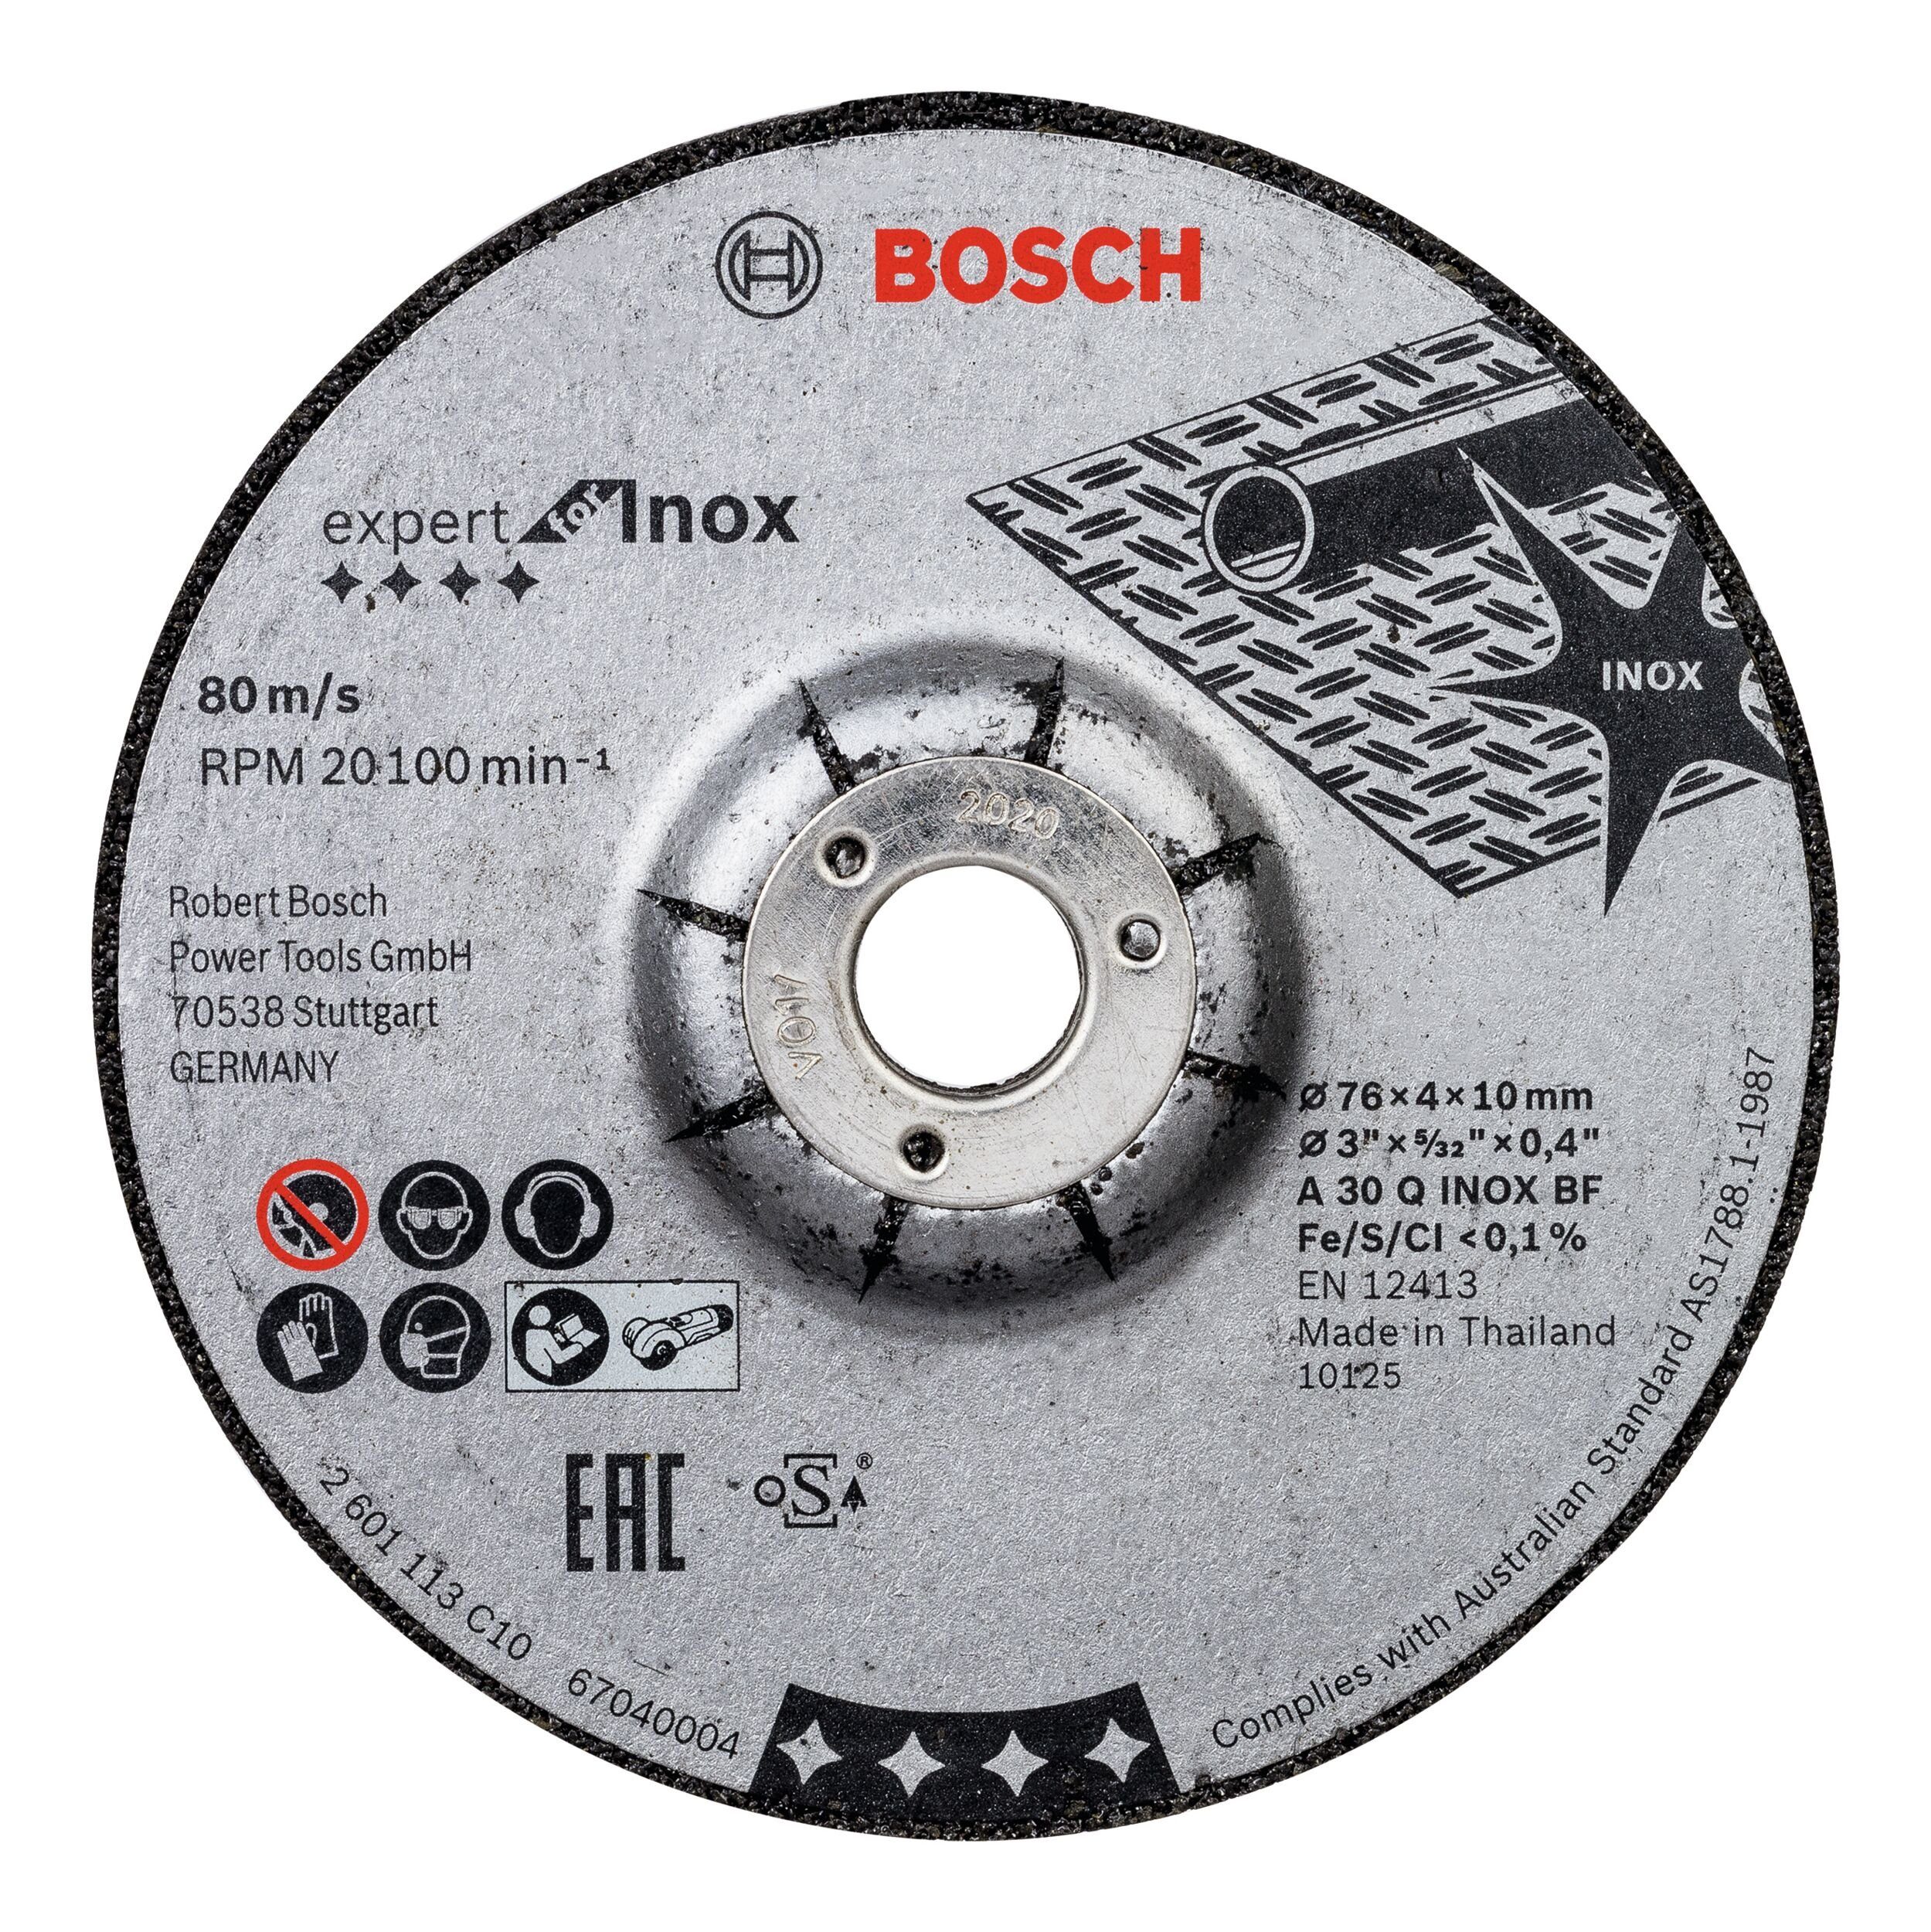 Bosch Professional BOSCH Schruppscheibe Expert, Ø 76 mm, (2 Stück), For Inox A 30 Q INOX BF - 76 x 4 x 10 mm - 2er-Pack